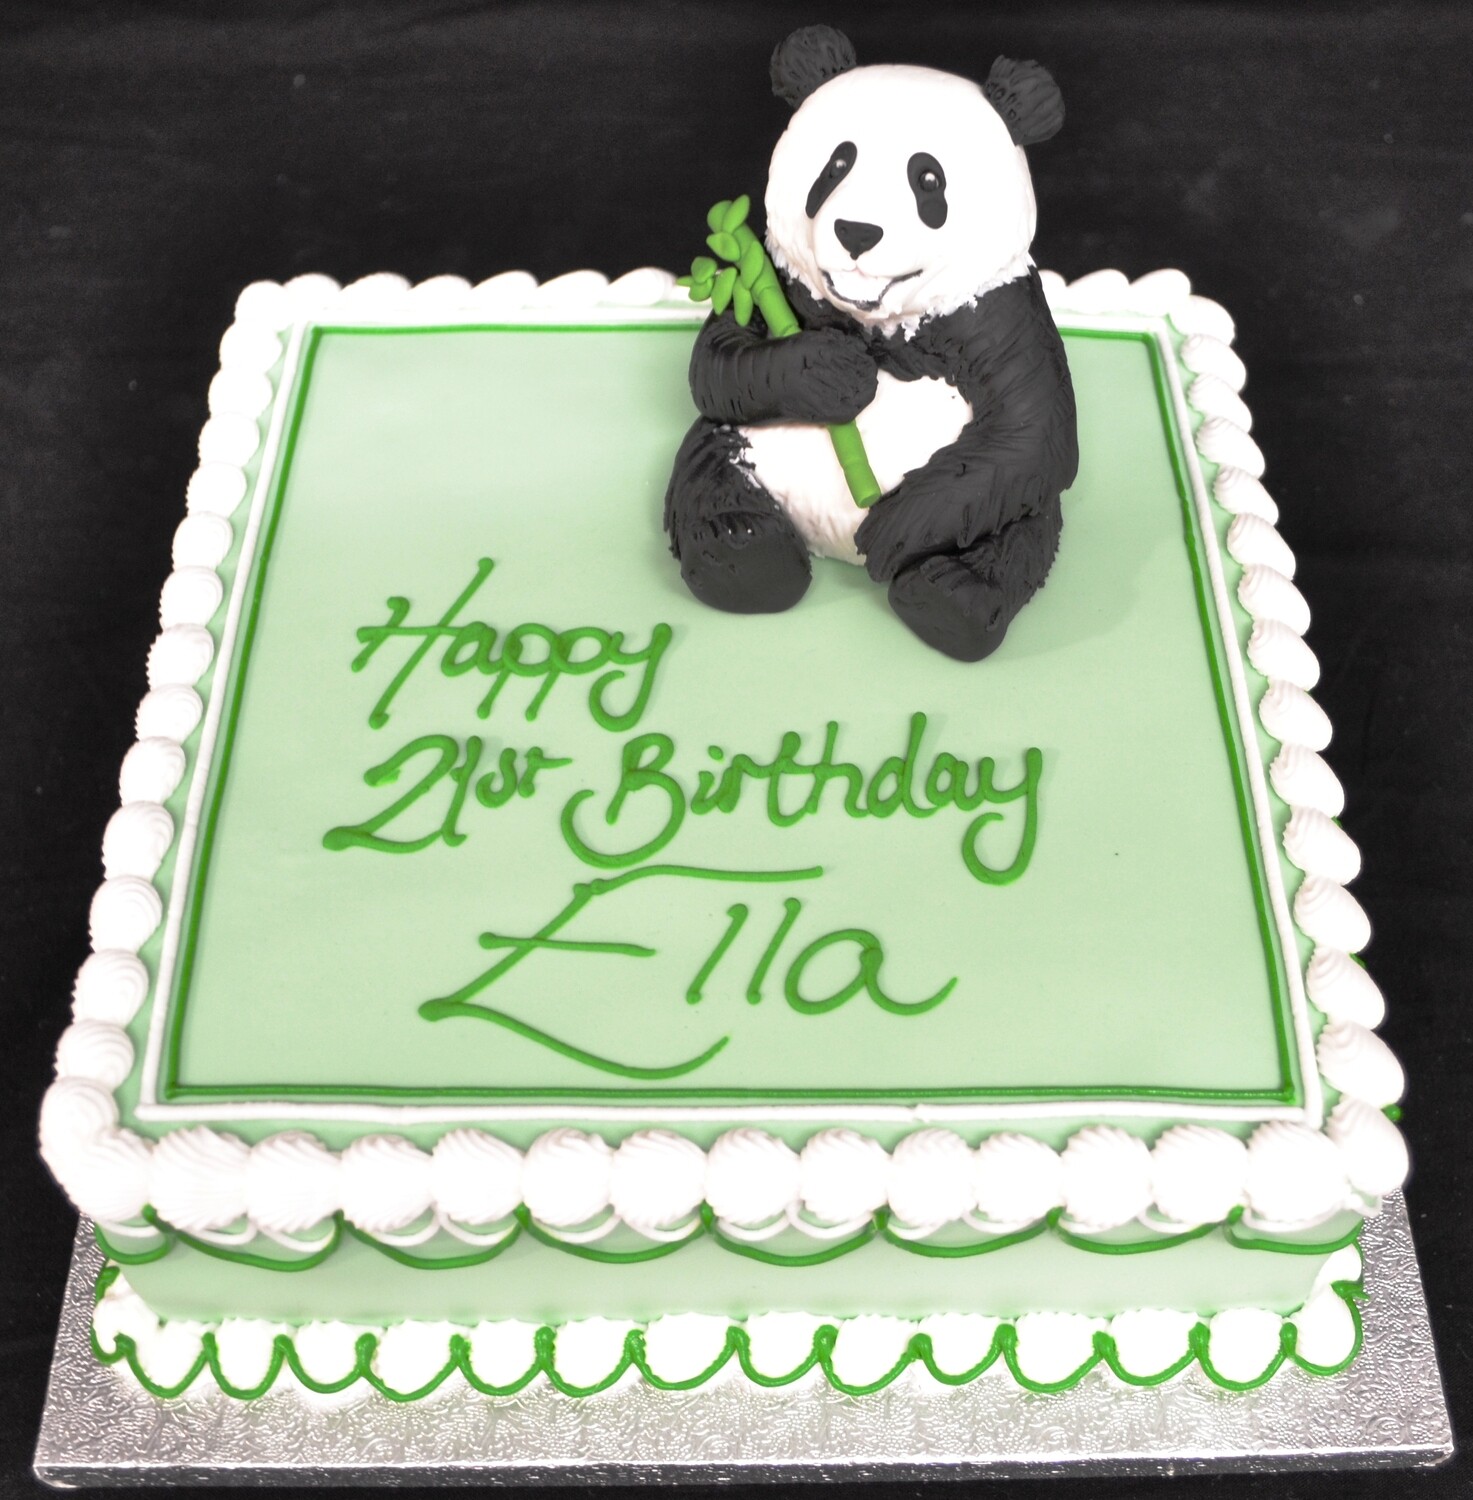 Panda on square cake